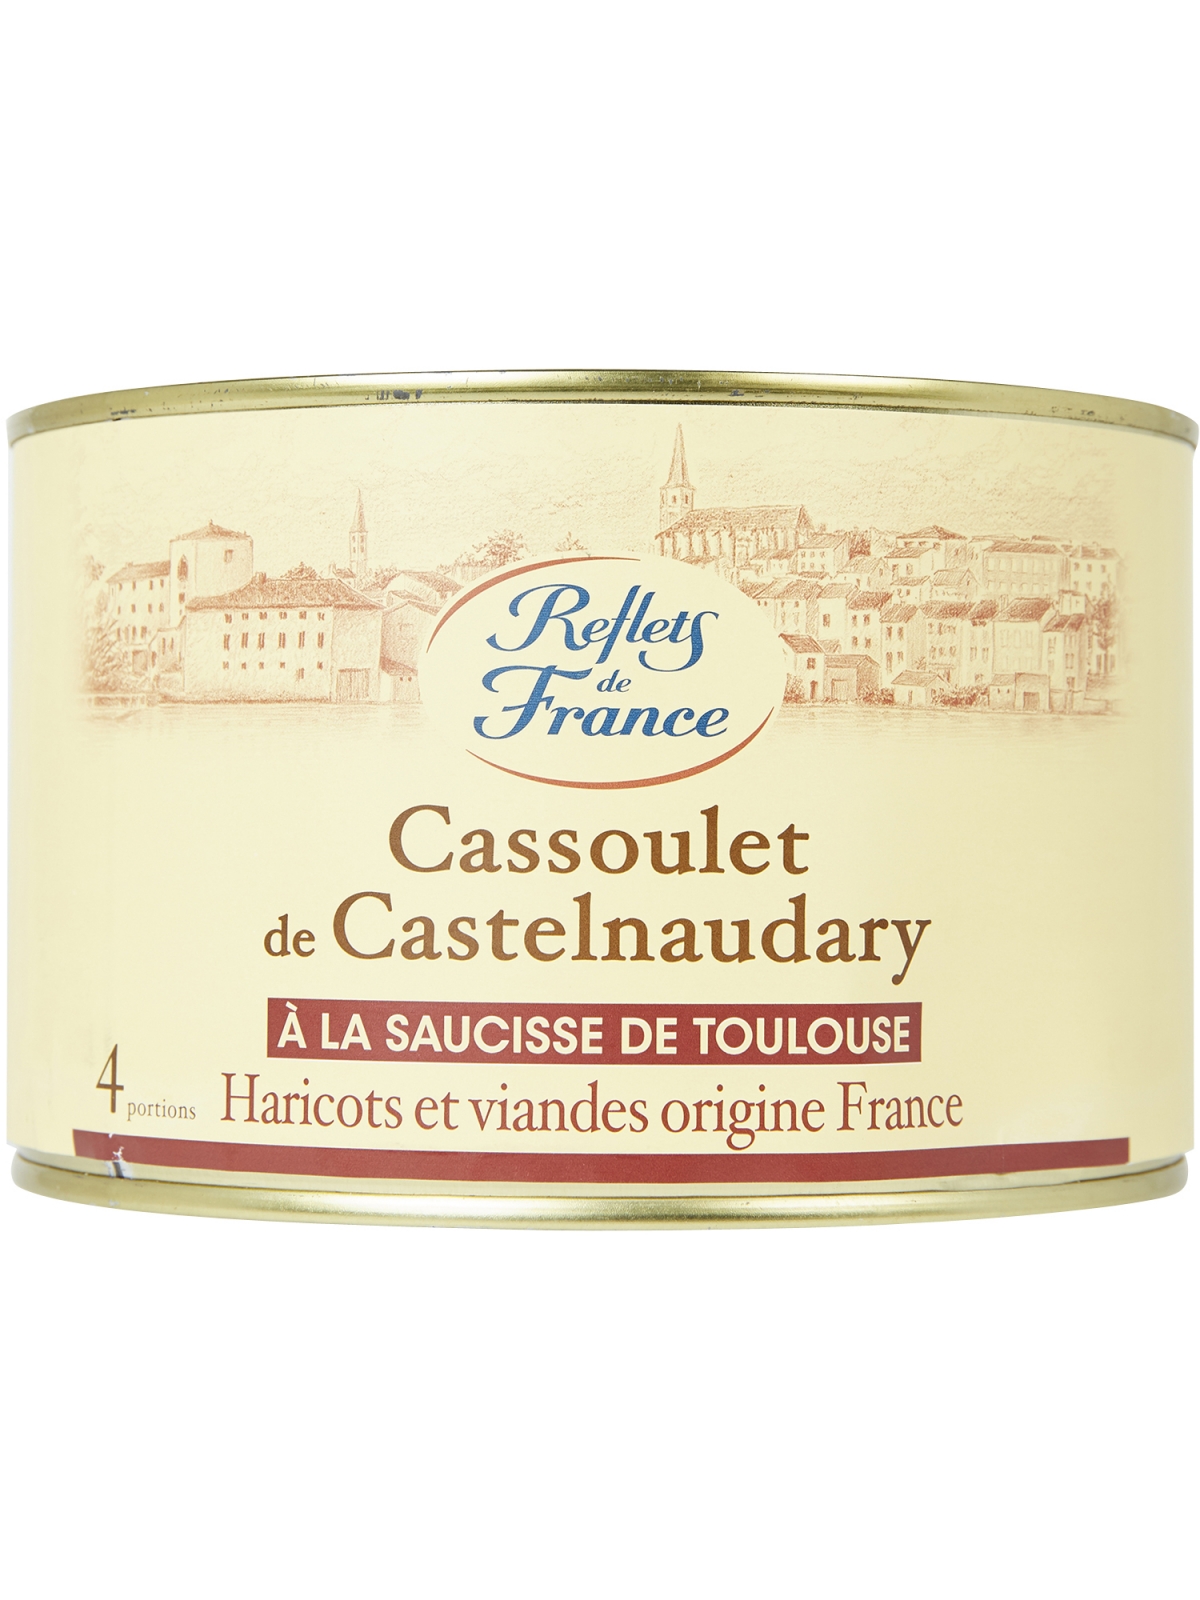 Plat cuisiné Cassoulet au porc REFLETS DE FRANCE